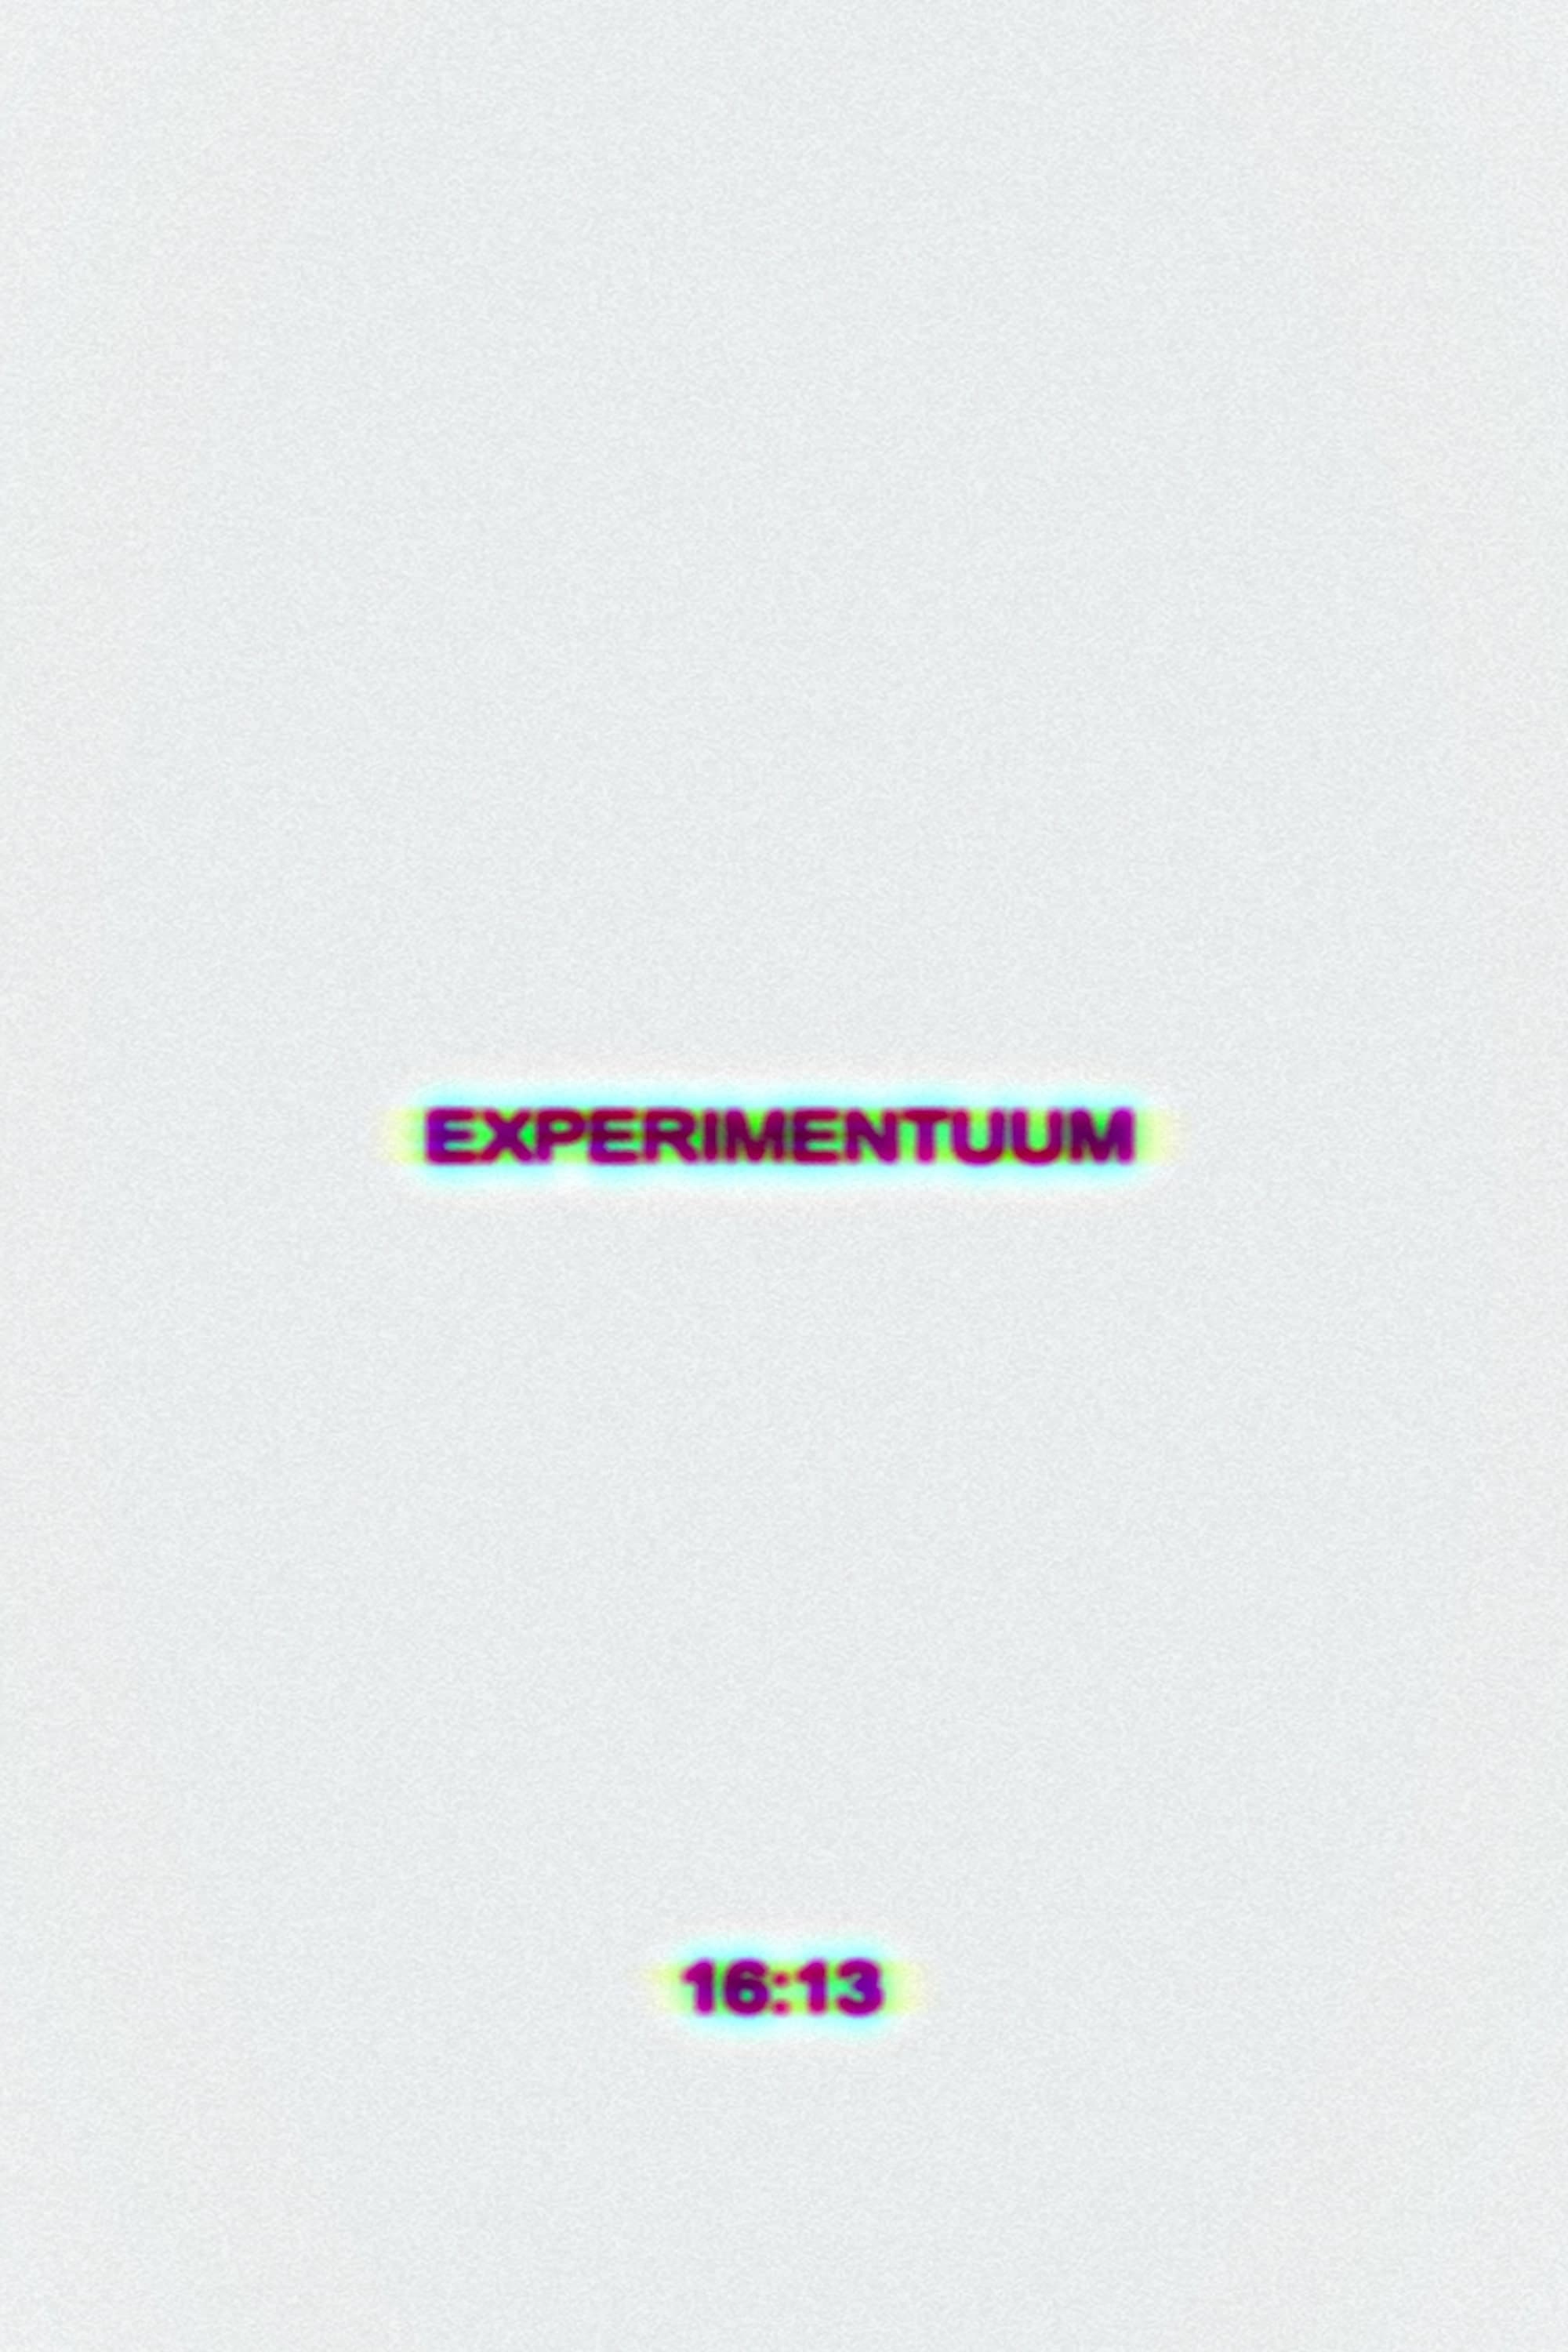 Experimentuum